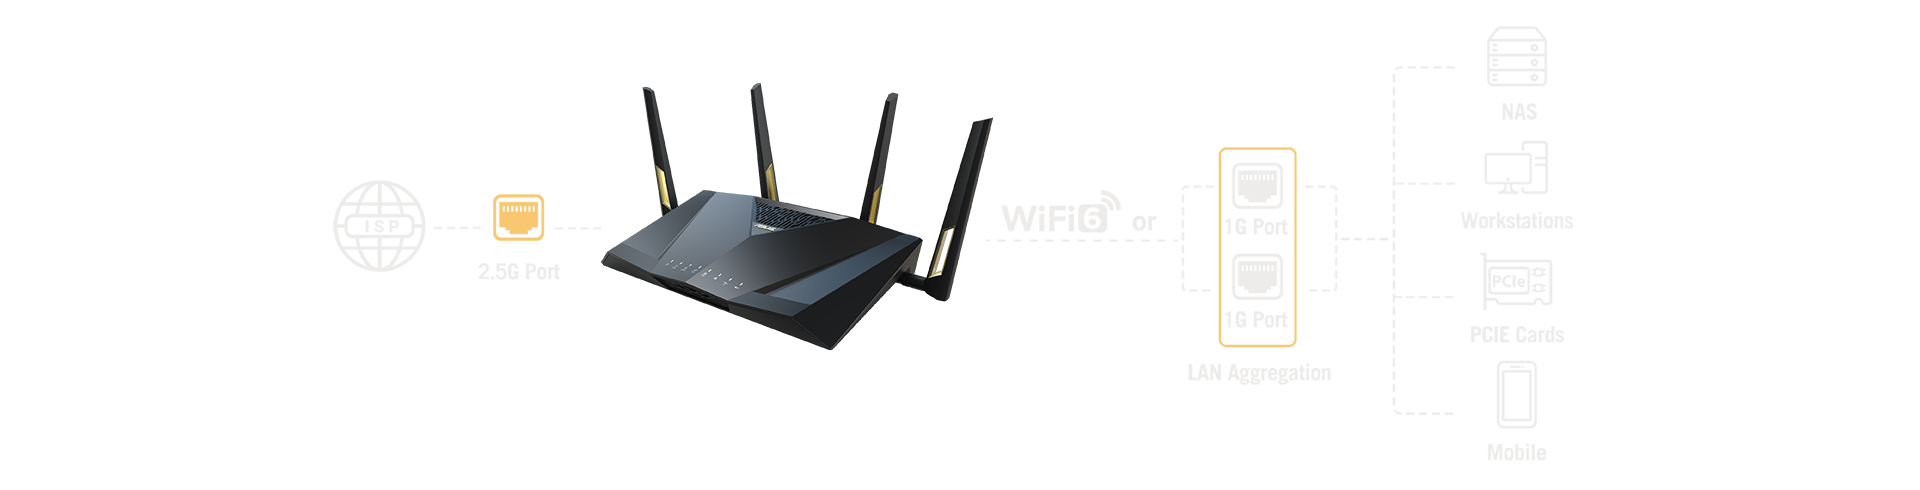 Використовуючи об’єднання каналів LAN, можна об’єднати пропускну здатність двох «гігабітних» портів LAN, щоб отримати підключення LAN на швидкості до 2 Гбіт/с.